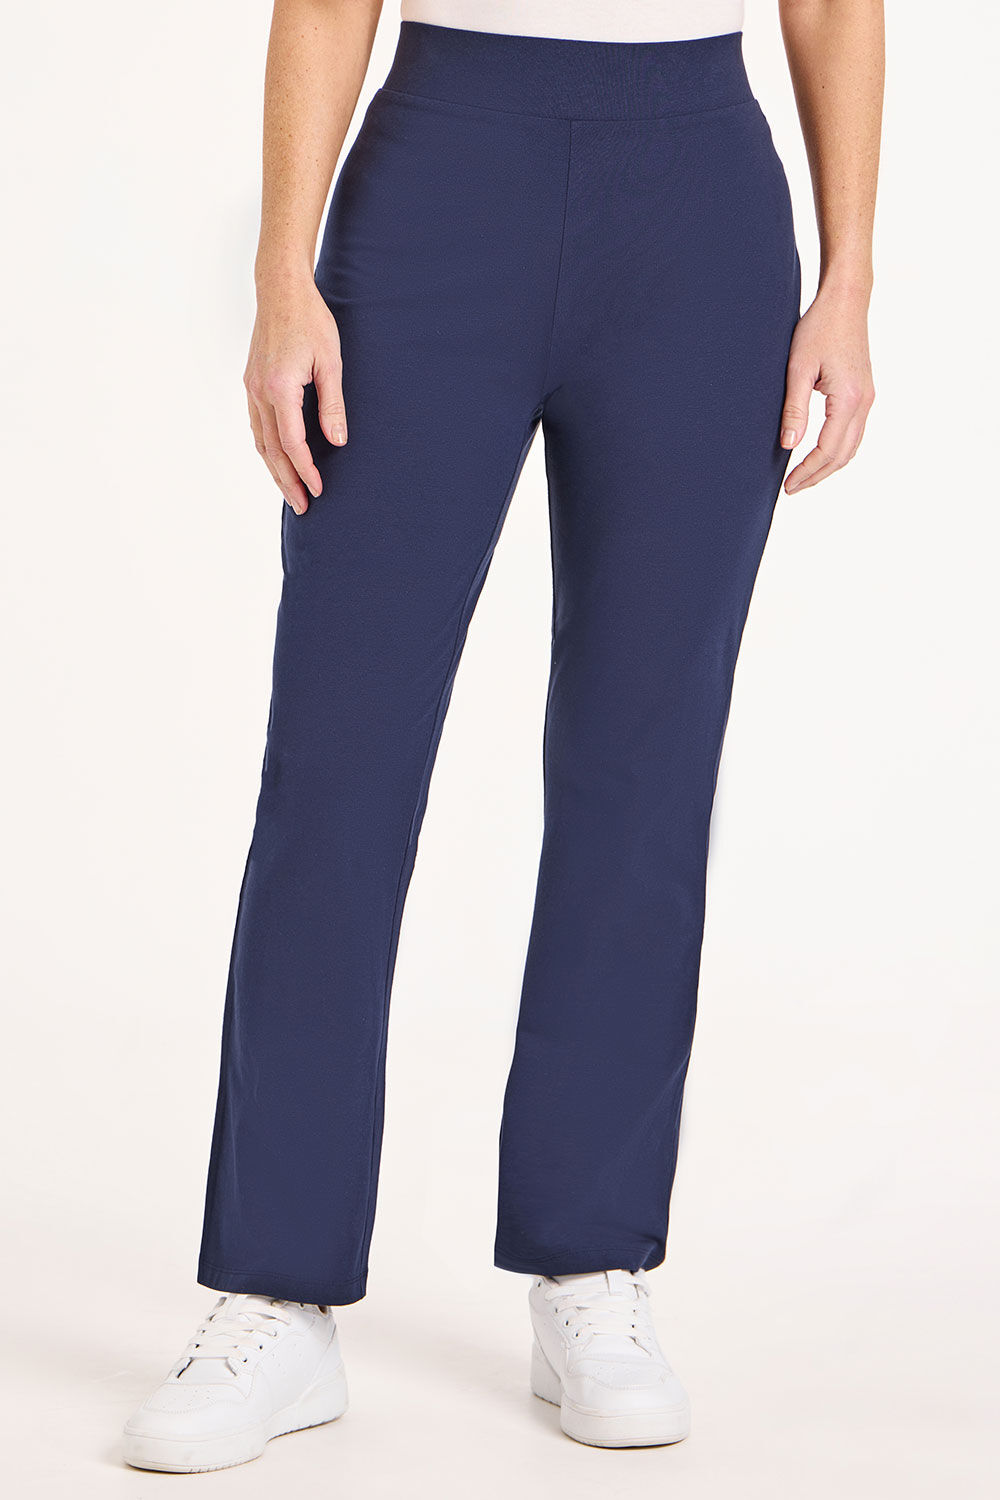 Bonmarche Navy Short Yoga Pants - Blue - Size 16